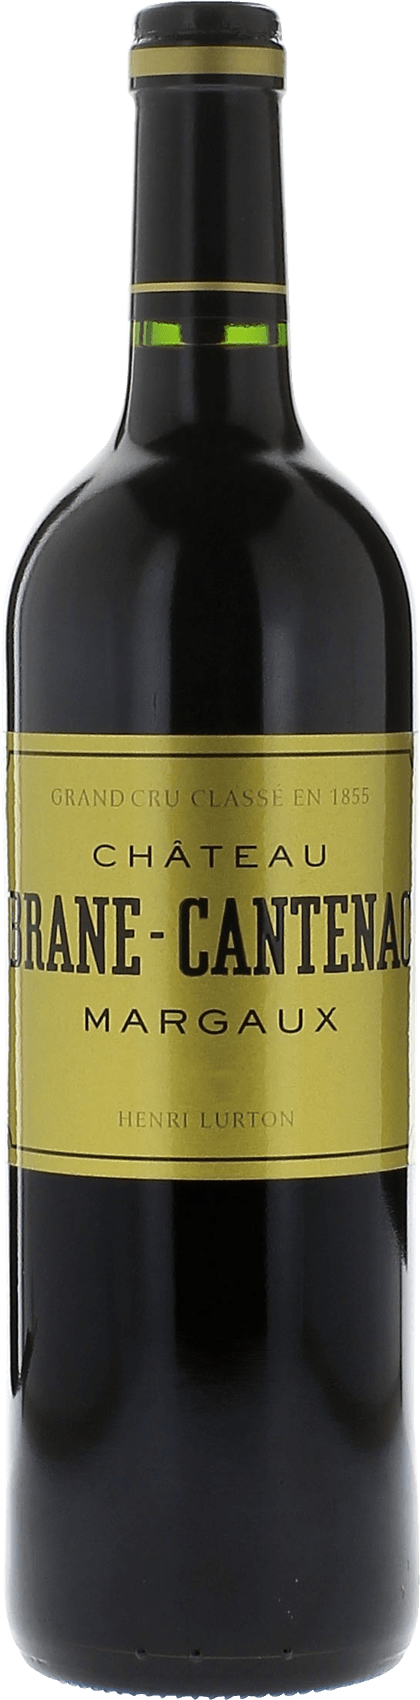 Brane cantenac 2002 2me Grand cru class Margaux, Bordeaux rouge